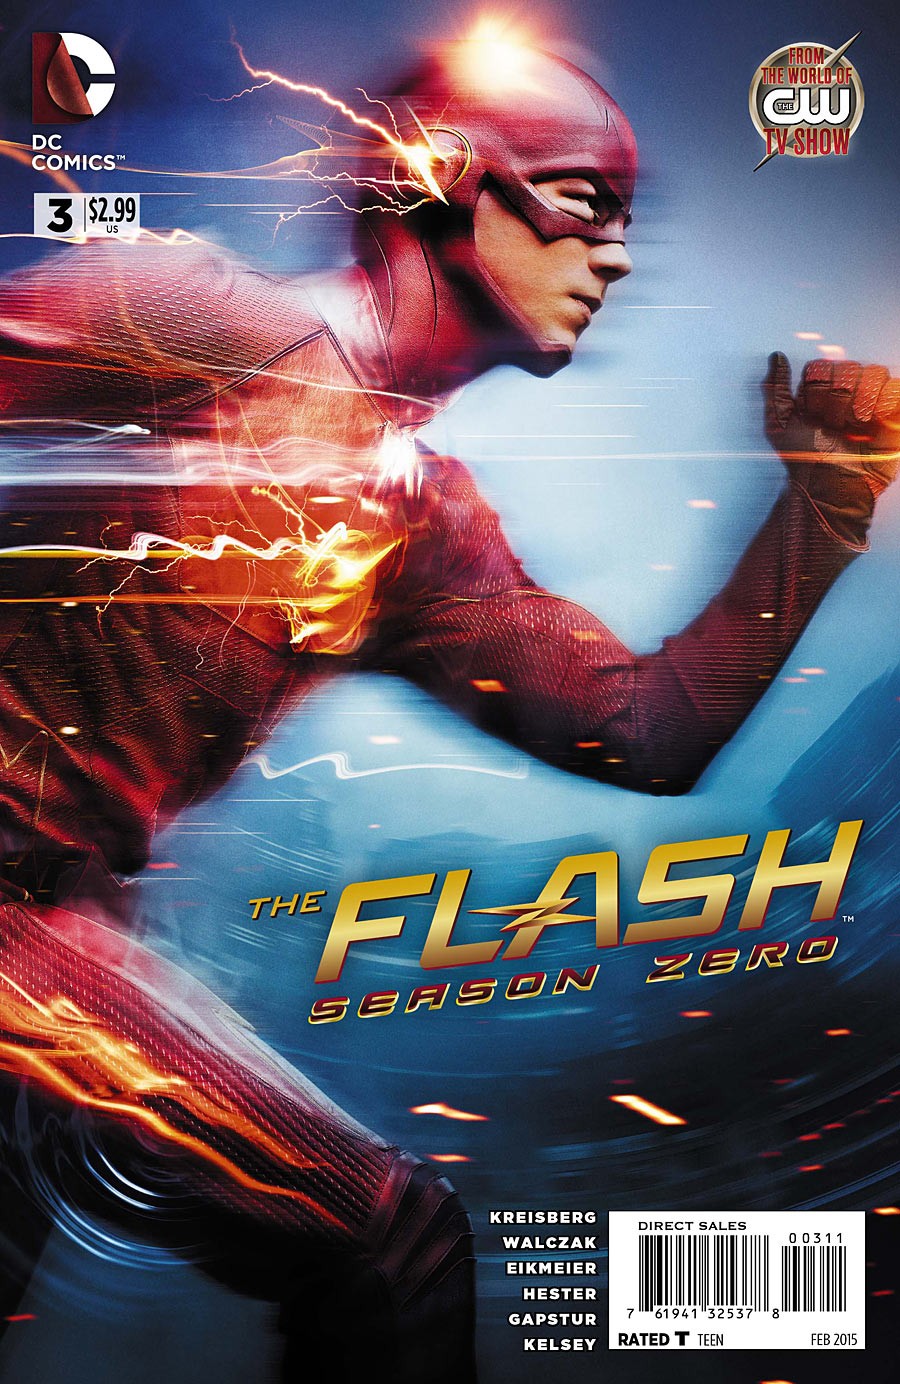 The Flash: Season Zero Vol. 1 #3